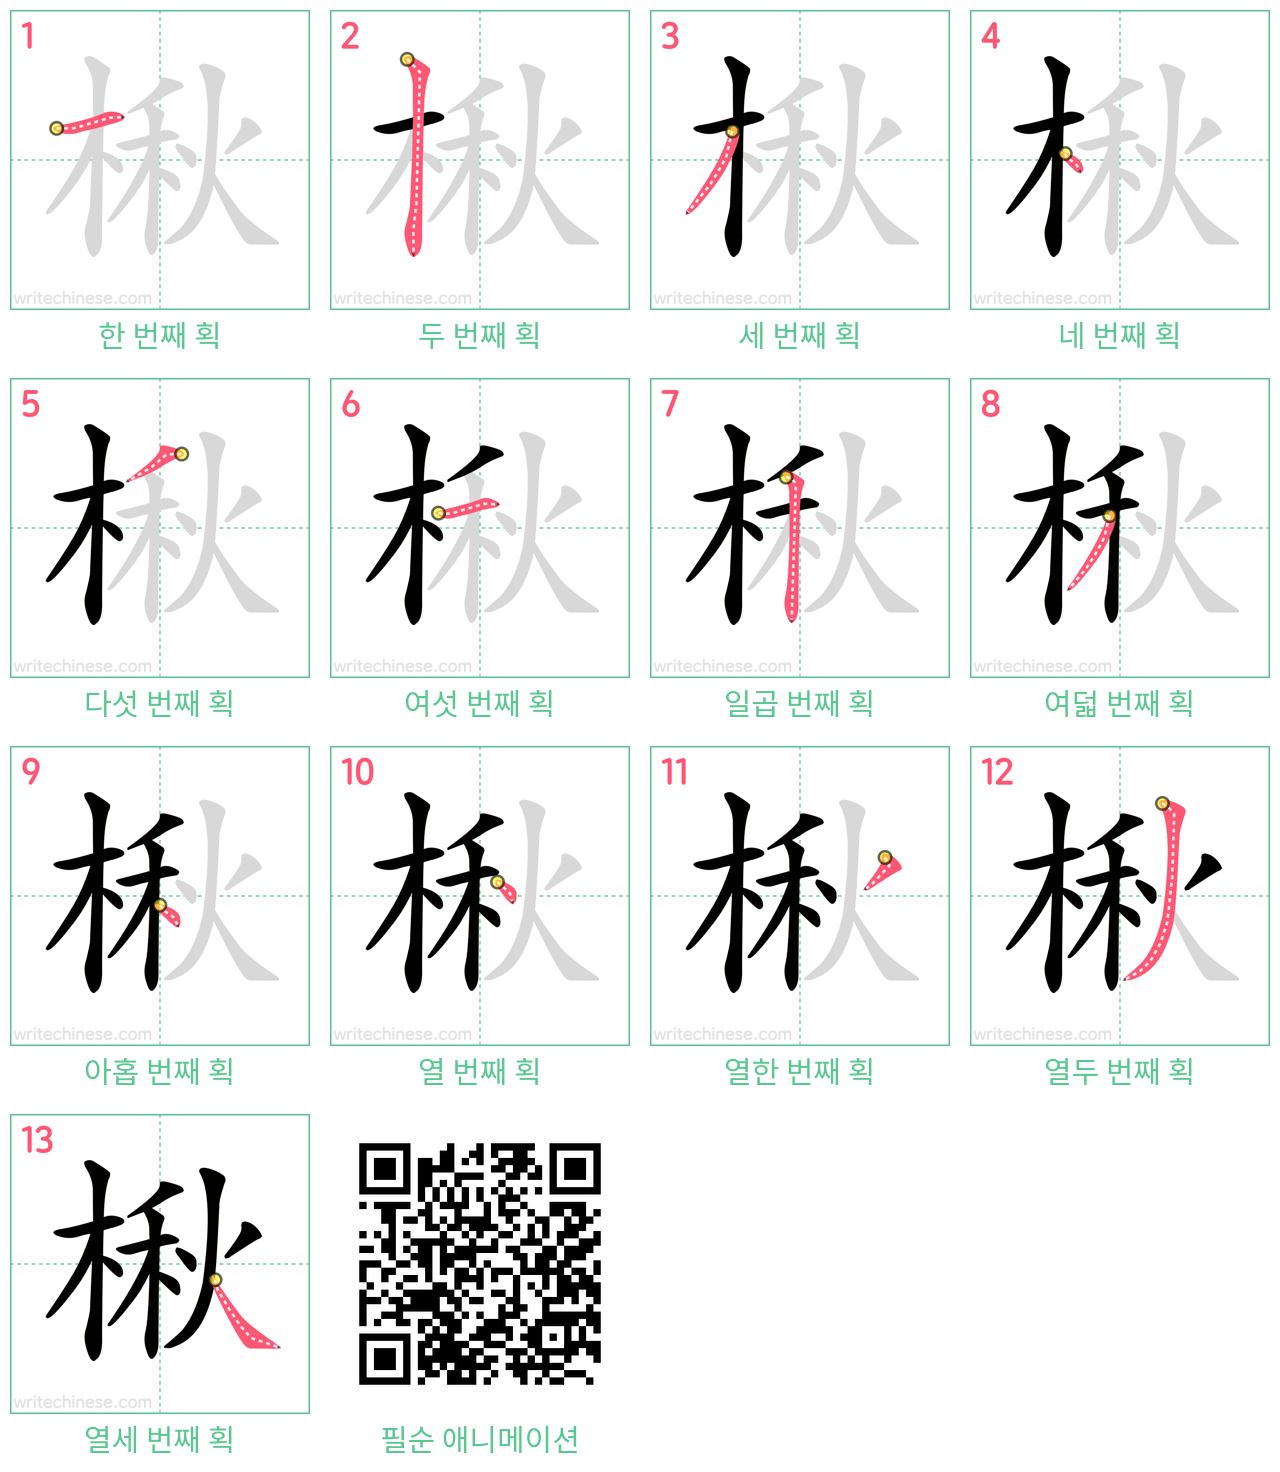 楸 step-by-step stroke order diagrams